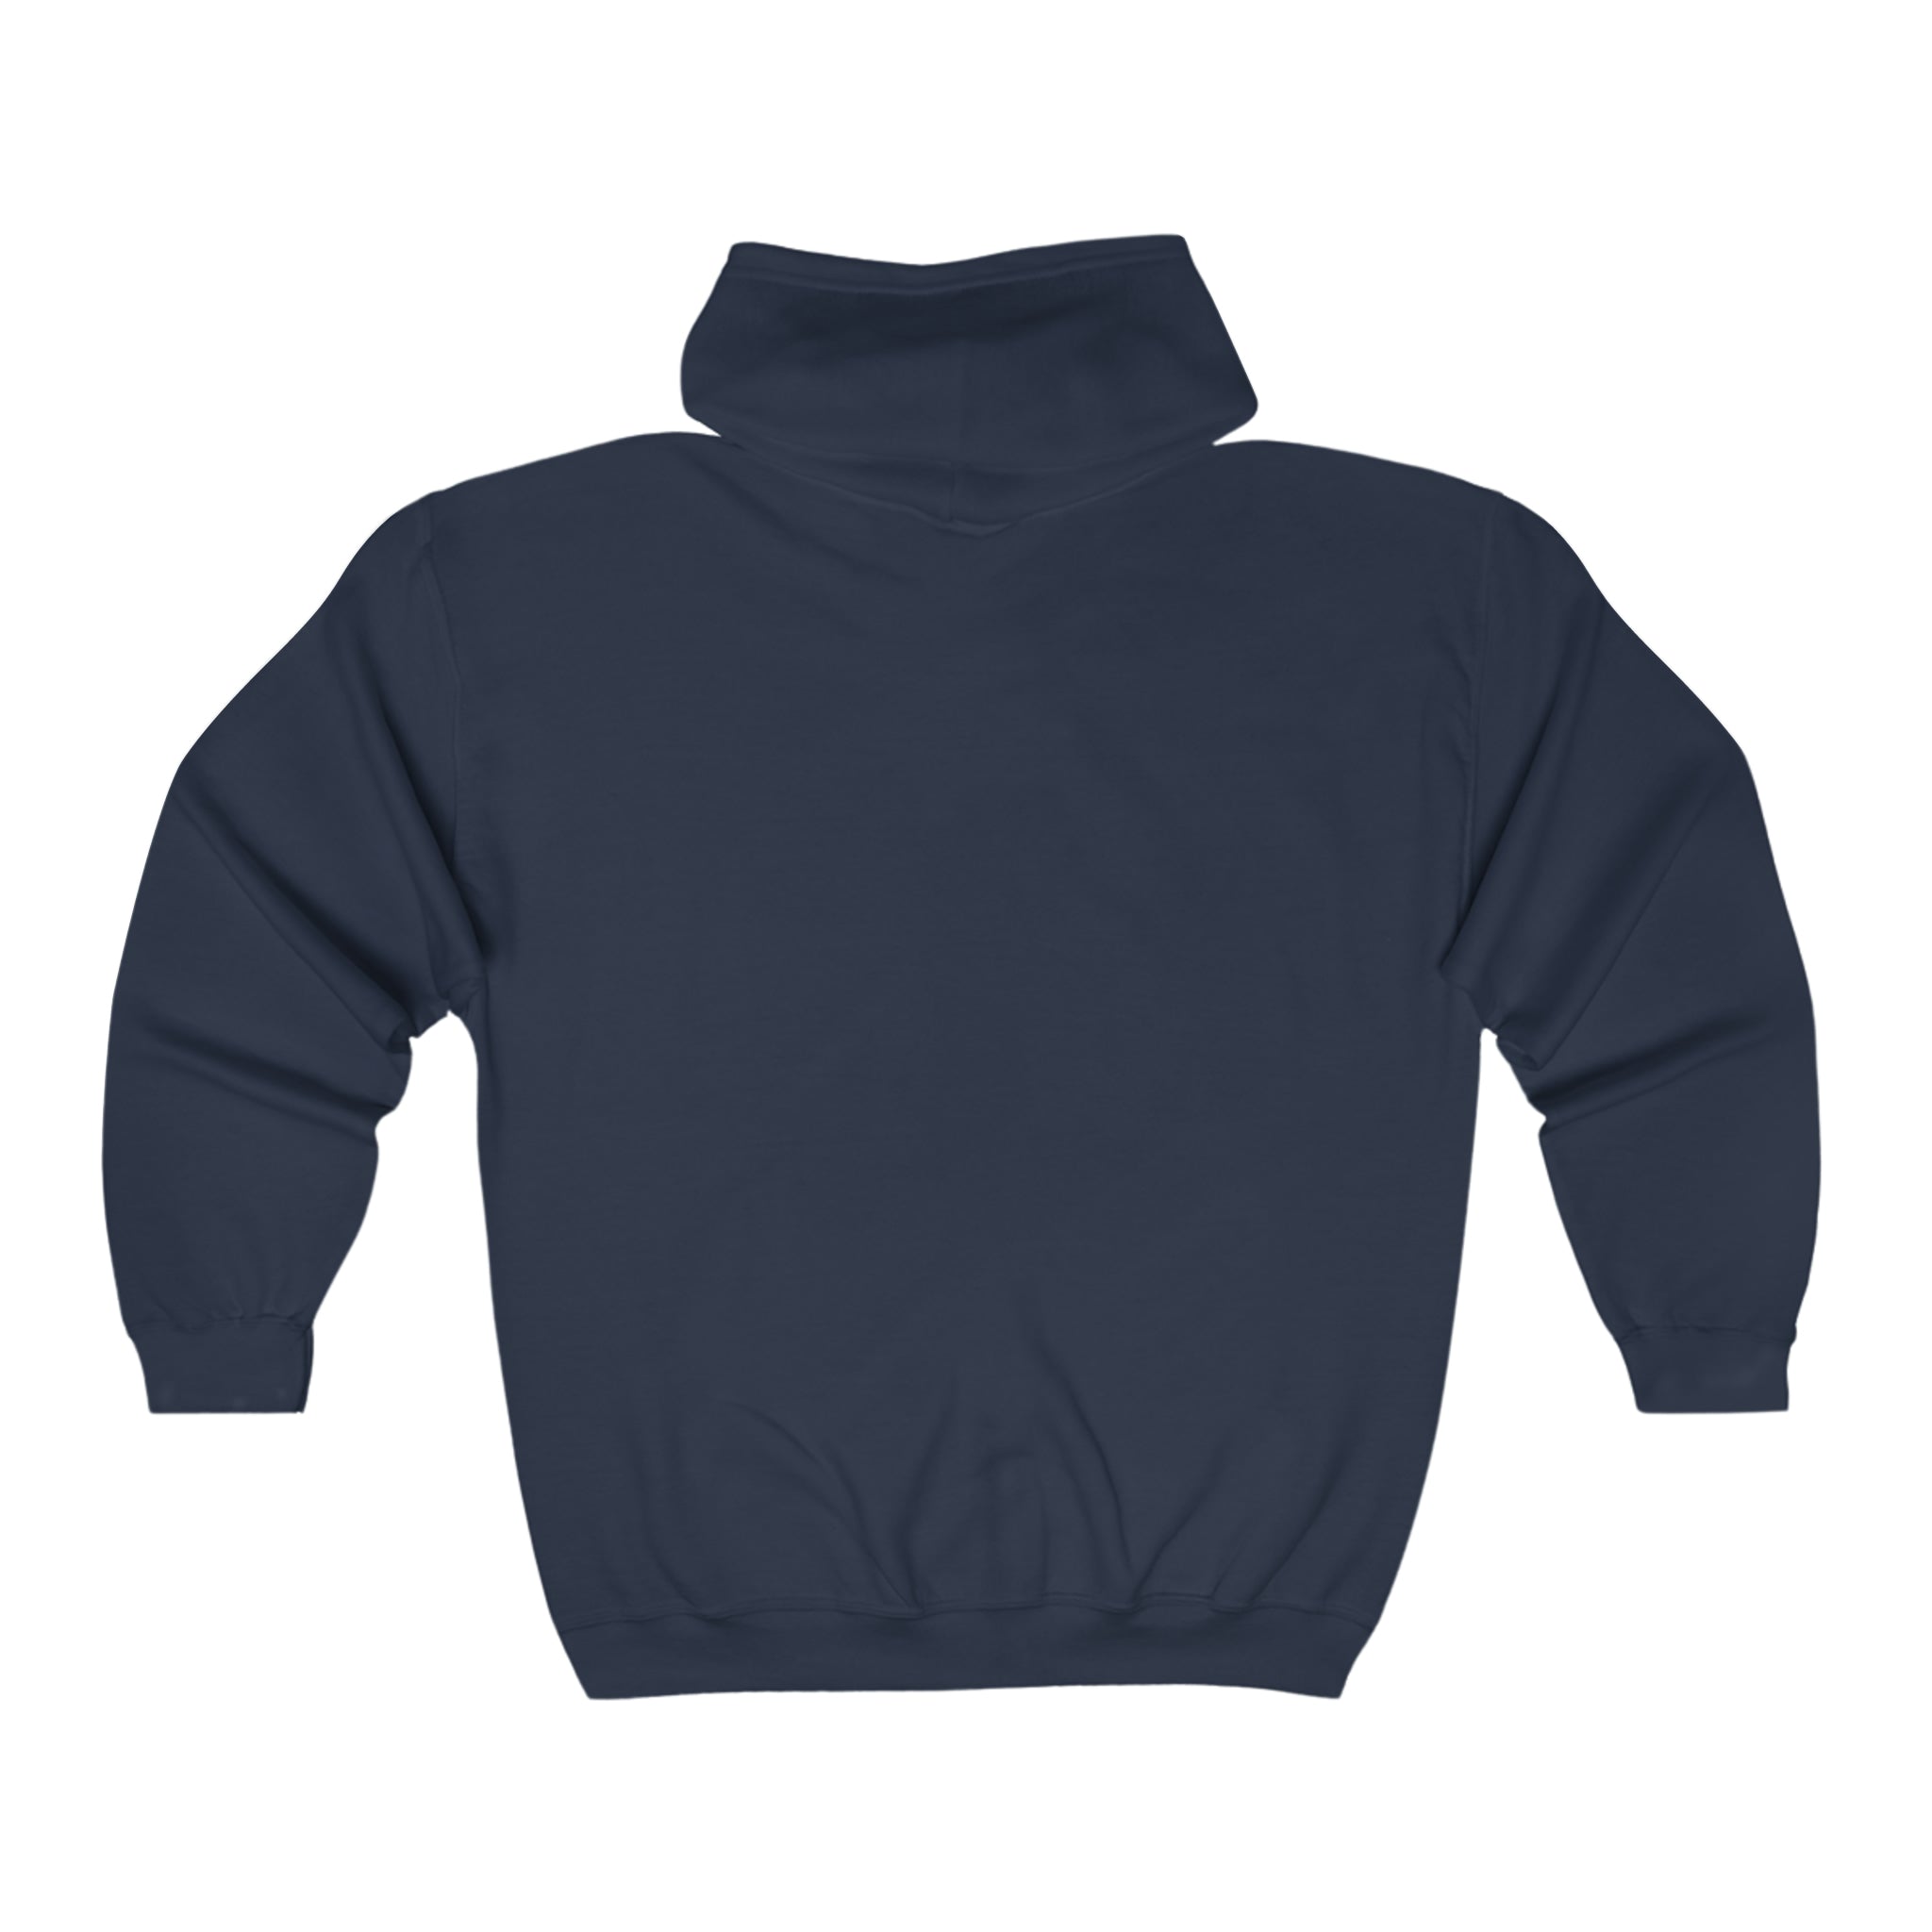 Unisex Heavy Blend™ Full Zip Hooded Sweatshirt - Baby Animals - Deer